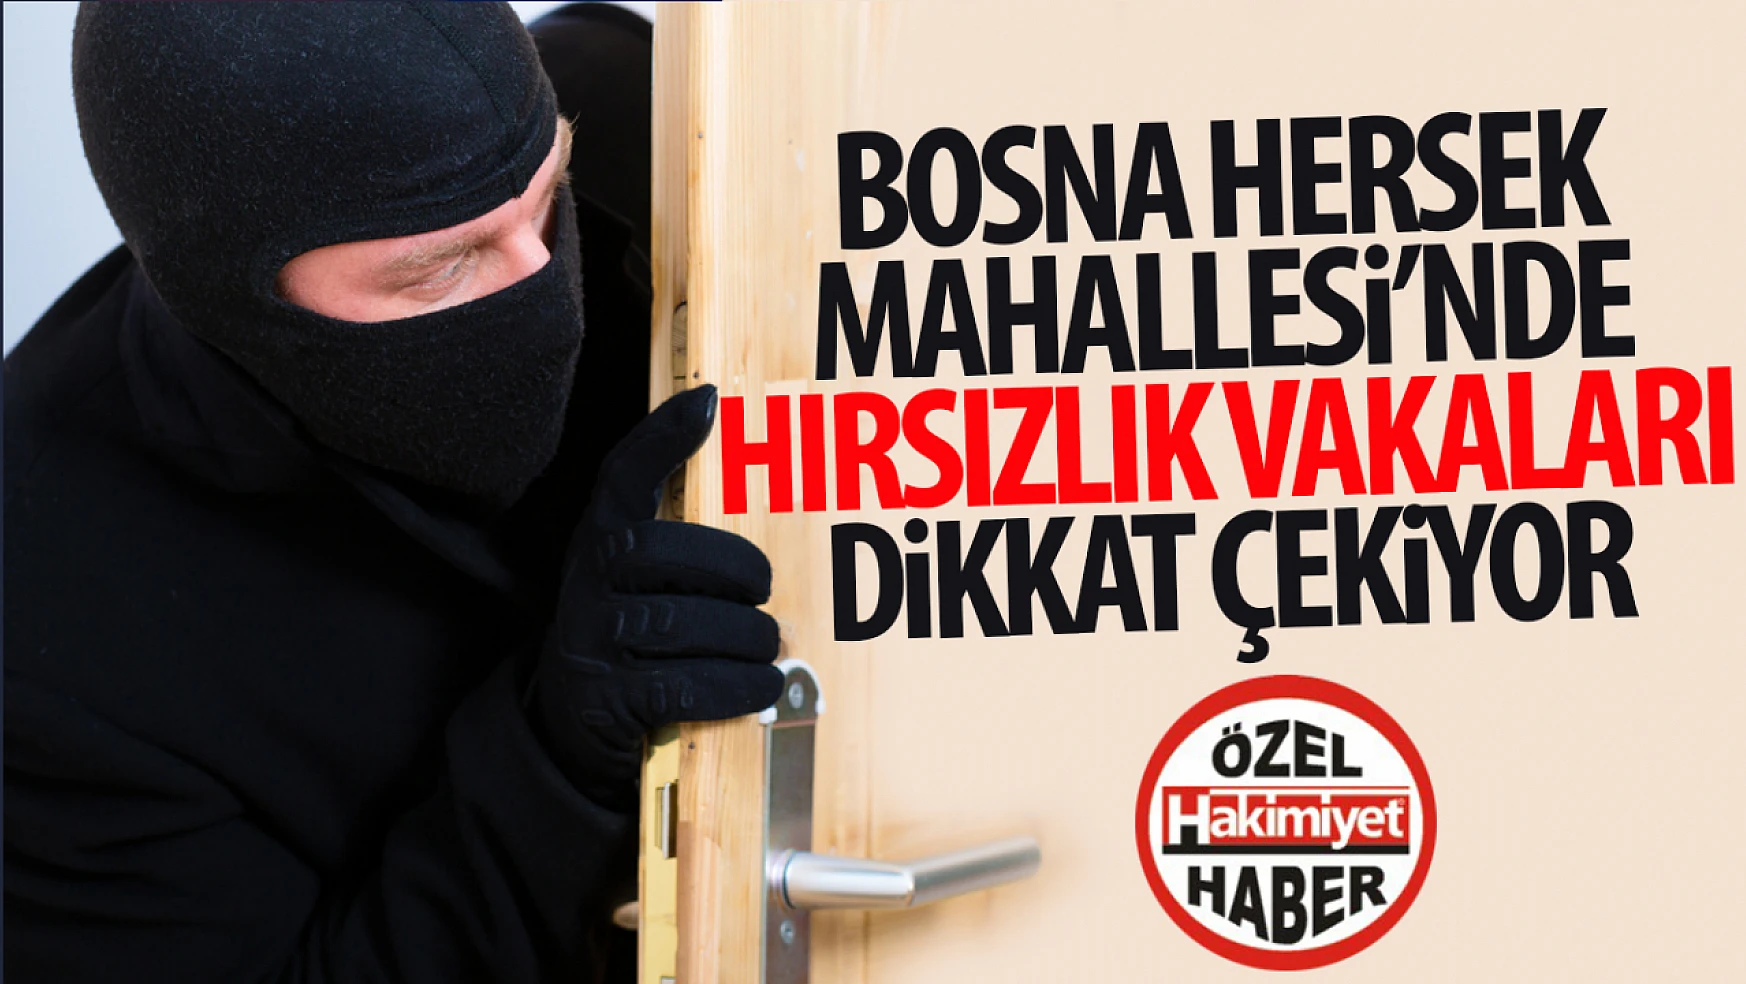 Konya Bosna Hersek Mahallesi'nde Artan Hırsızlık Olayları Dikkat Çekiyor